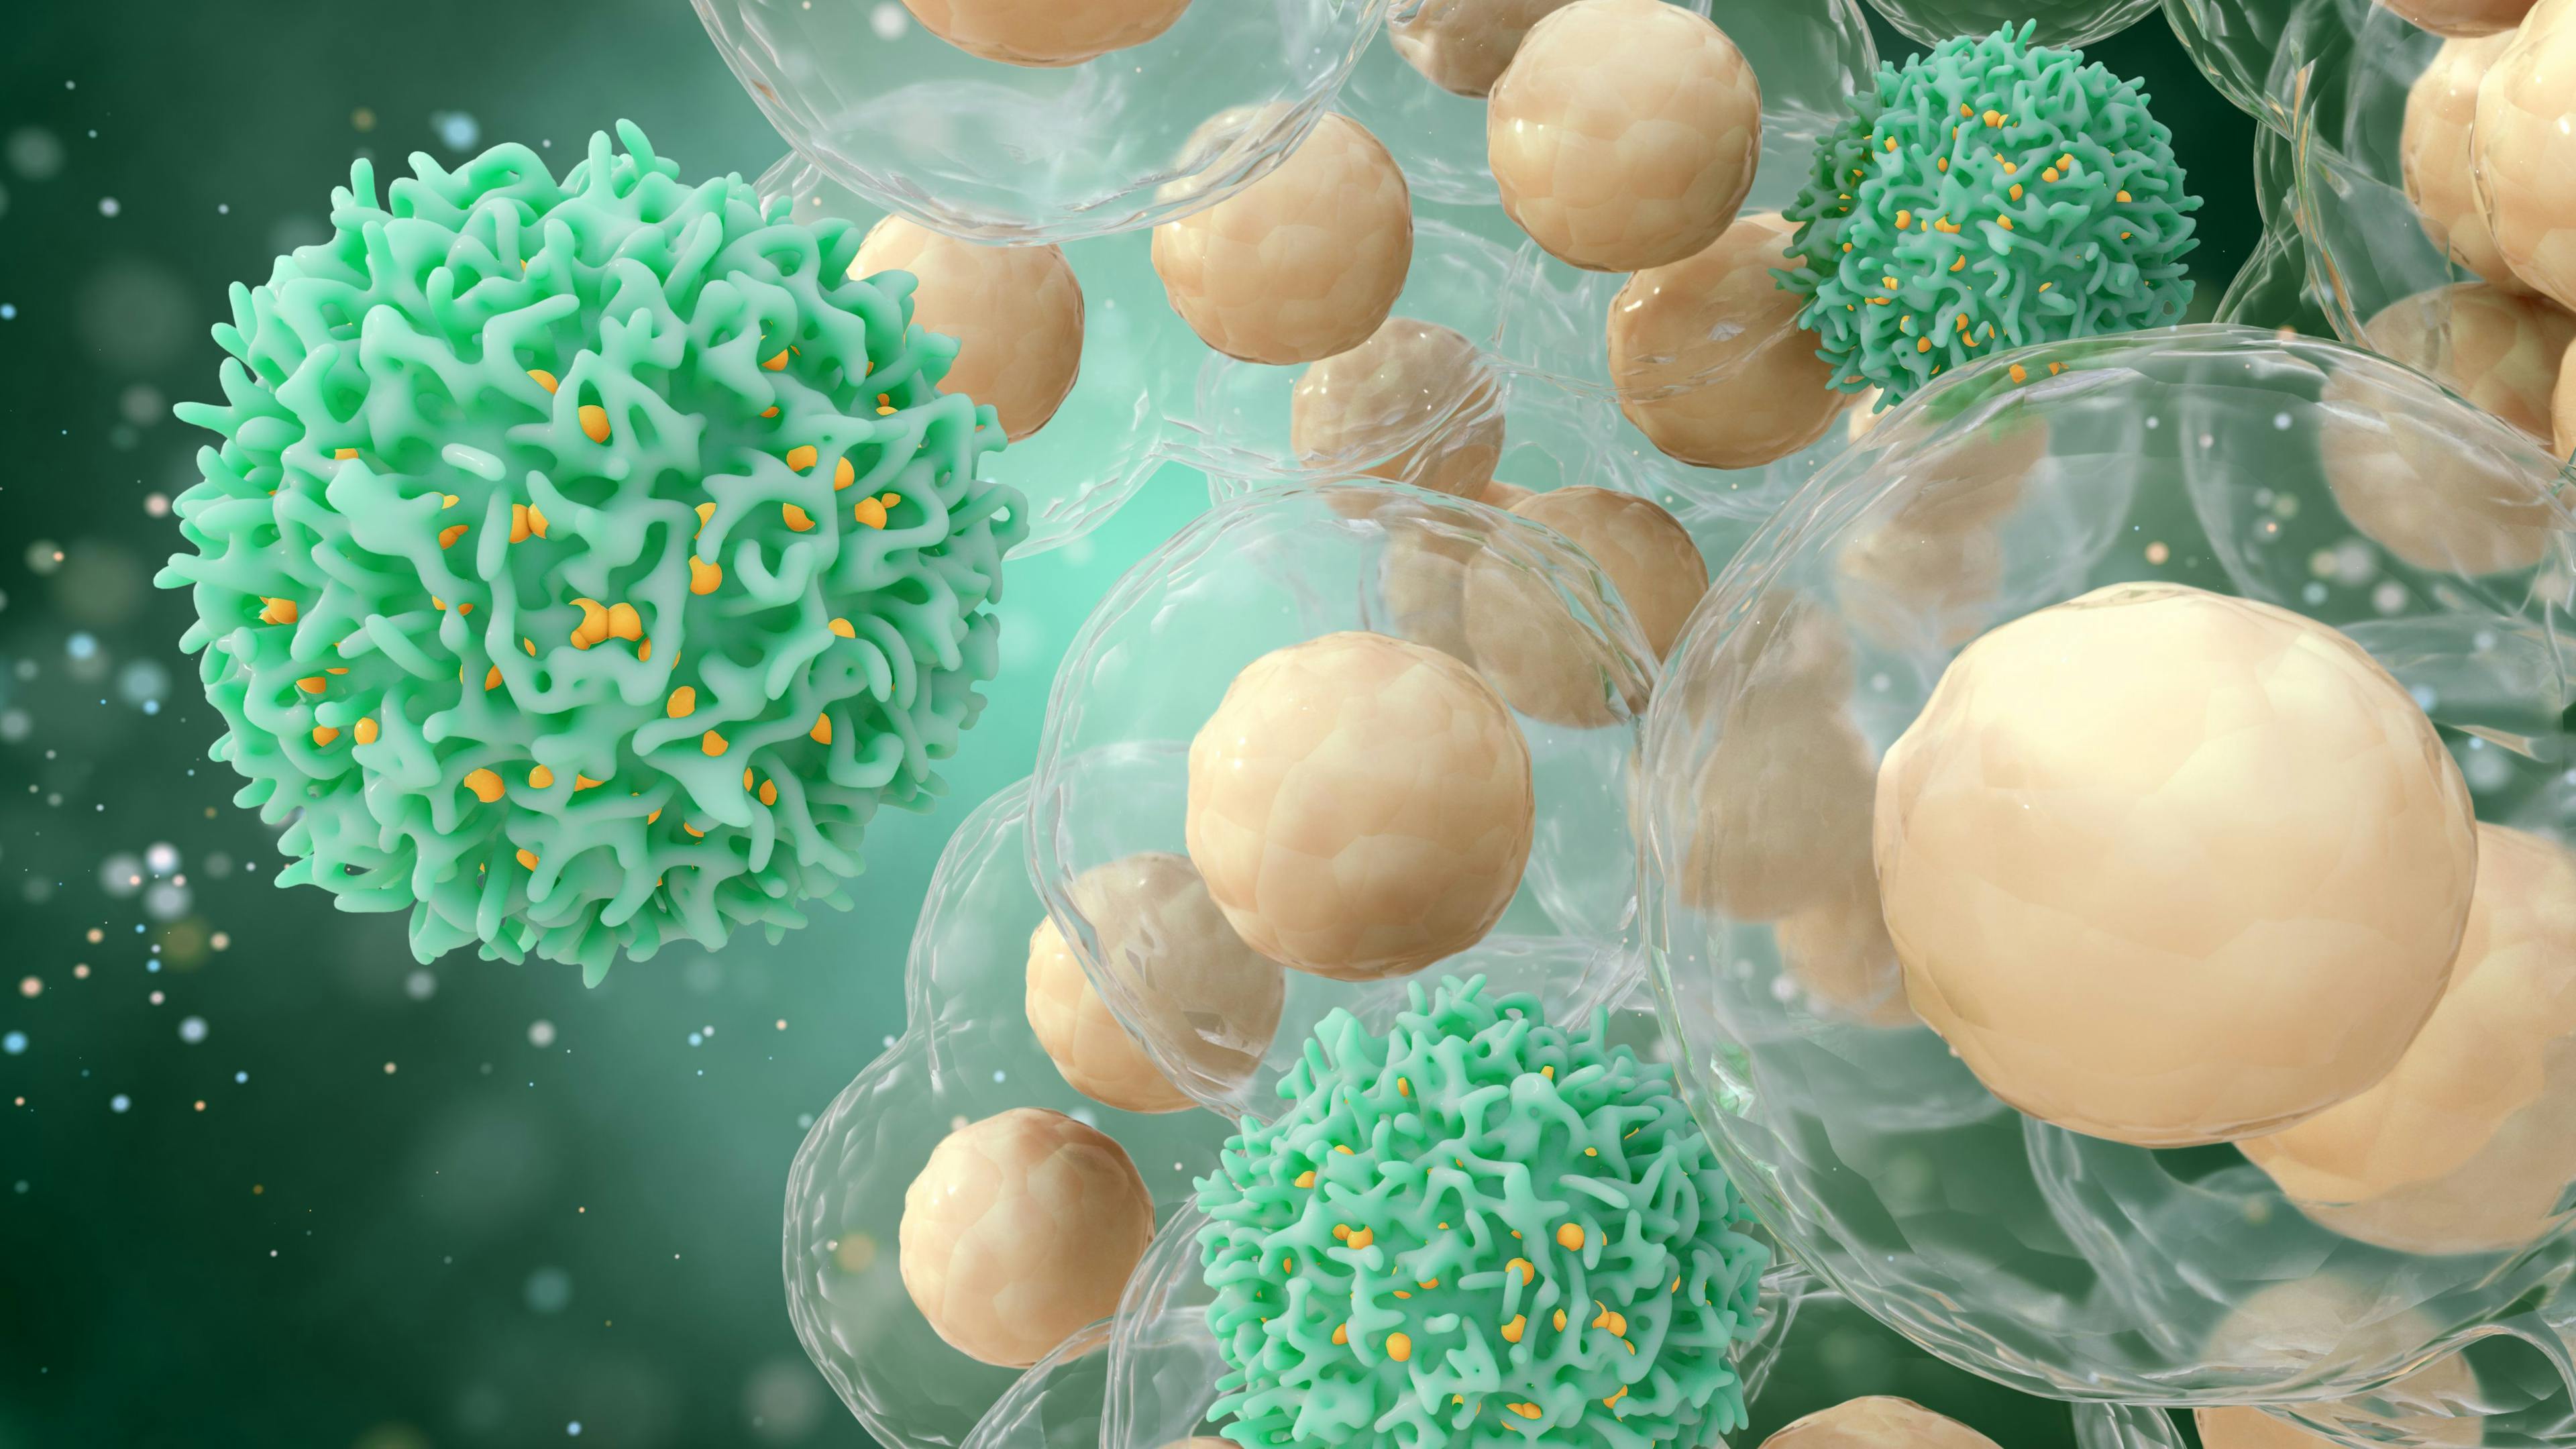 Medical concept of cancer. 3d illustration of T cells or cancer cells. | Image Credit: © k_e_n - stock.adobe.com